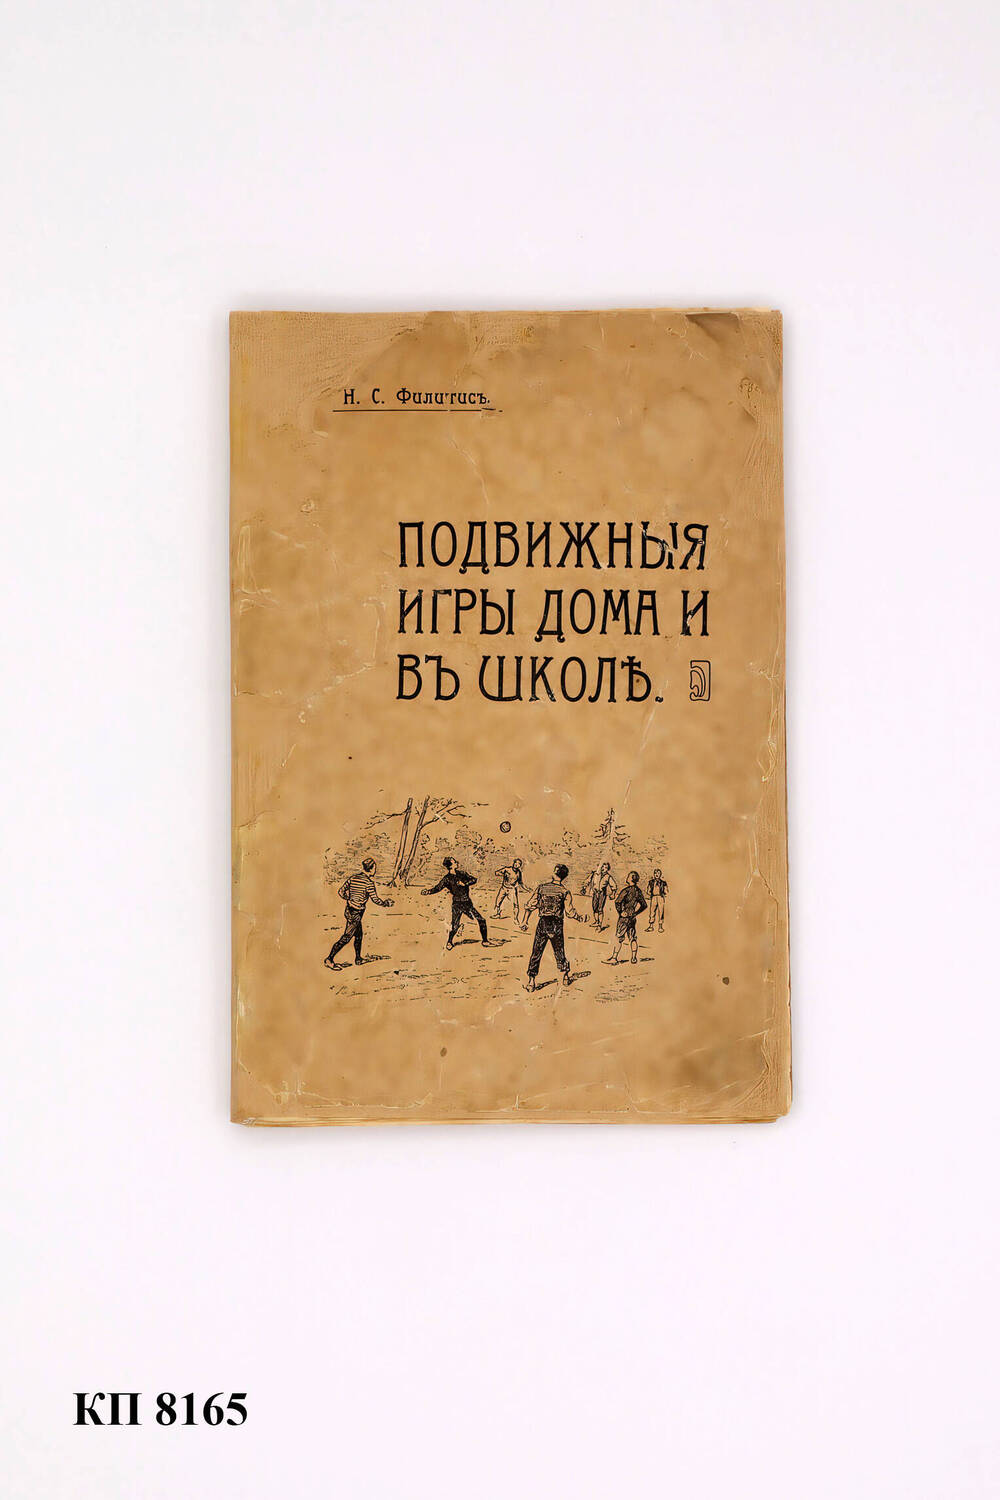 Брошюра «Подвижныя игры дома и въ школъ», 1905 г.